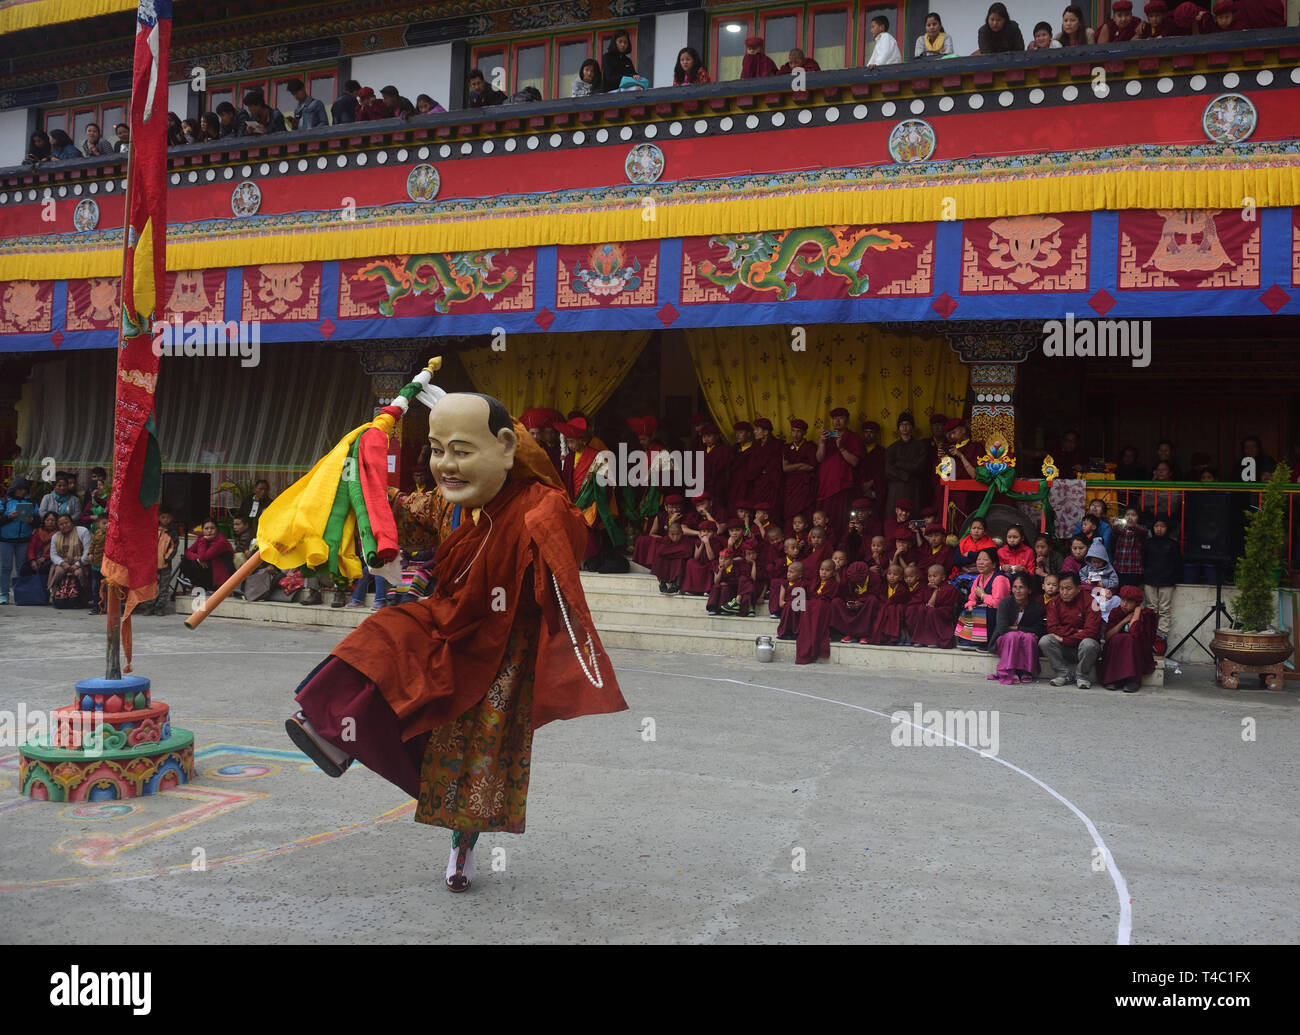 April 14, 2019-Dali, Darjeeling, West Bengal, Indien - Tshechu eine jährliche religiöse Buddhistische Festival durch die drukpa Linie der Karma-Kagyü-Schule des tibetischen Buddhismus gefeiert wird am zehnten Tag des Monats nach dem tibetischen Mondkalender entsprechend der Geburtstag von Guru Rimpoche (Guru Padmasambhava) wurde auf Druk Sang-Ngag Choling Kloster in Dali gehalten, Darjeeling auf 14/04/2019. Aber die genauen Monat des Tshechu variiert von Ort zu Ort und Kloster zu Kloster. Tshechus sind große Ereignisse, wo ganze Gemeinschaften gemeinsam Zeugnis Cham (Maske Tänze) Leistung von acht Manifestation kommen Stockfoto